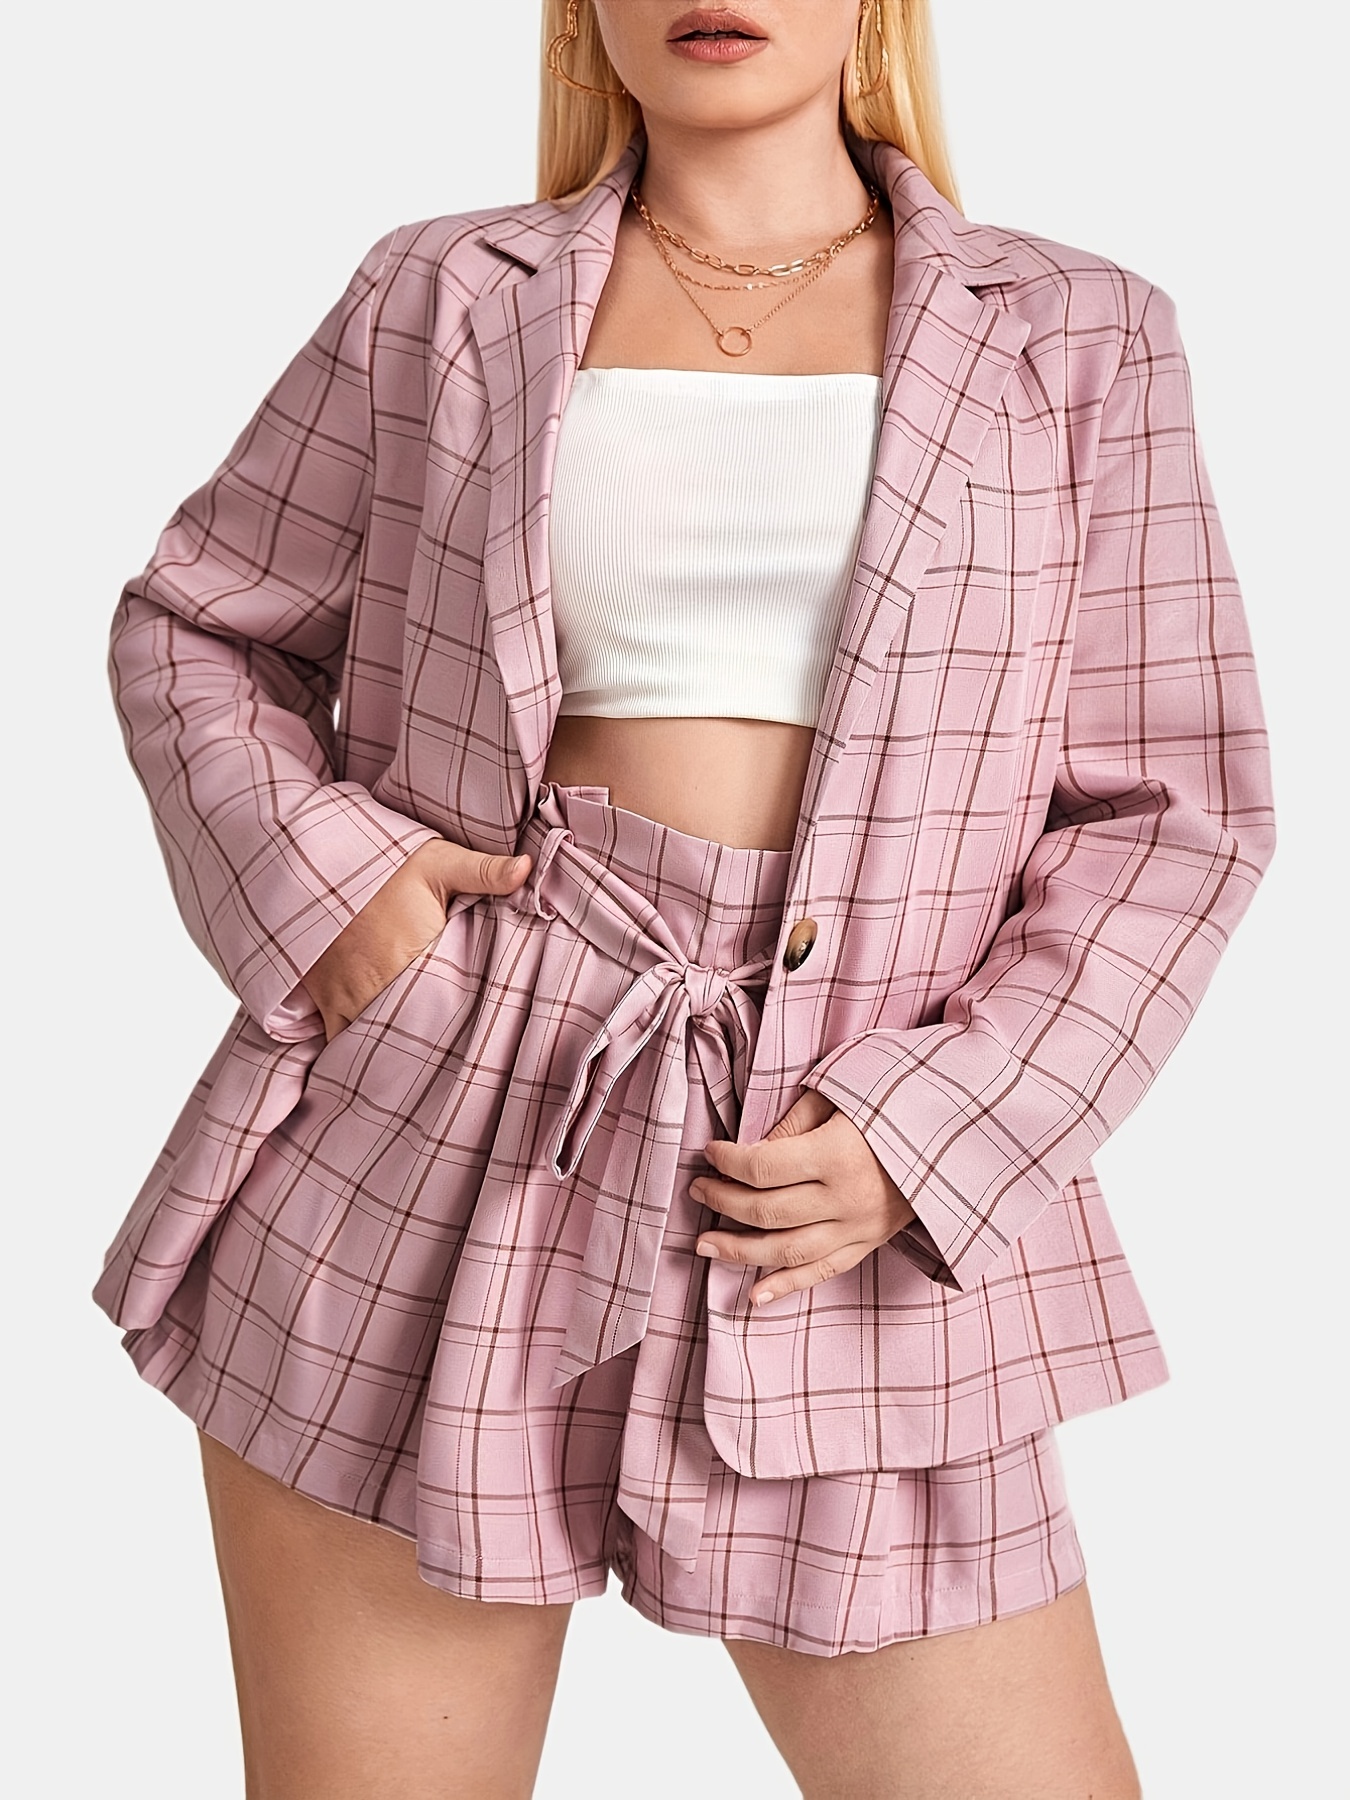 Pink Suit for Women/two Piece Suit/top/womens Suit/womens Suit Set